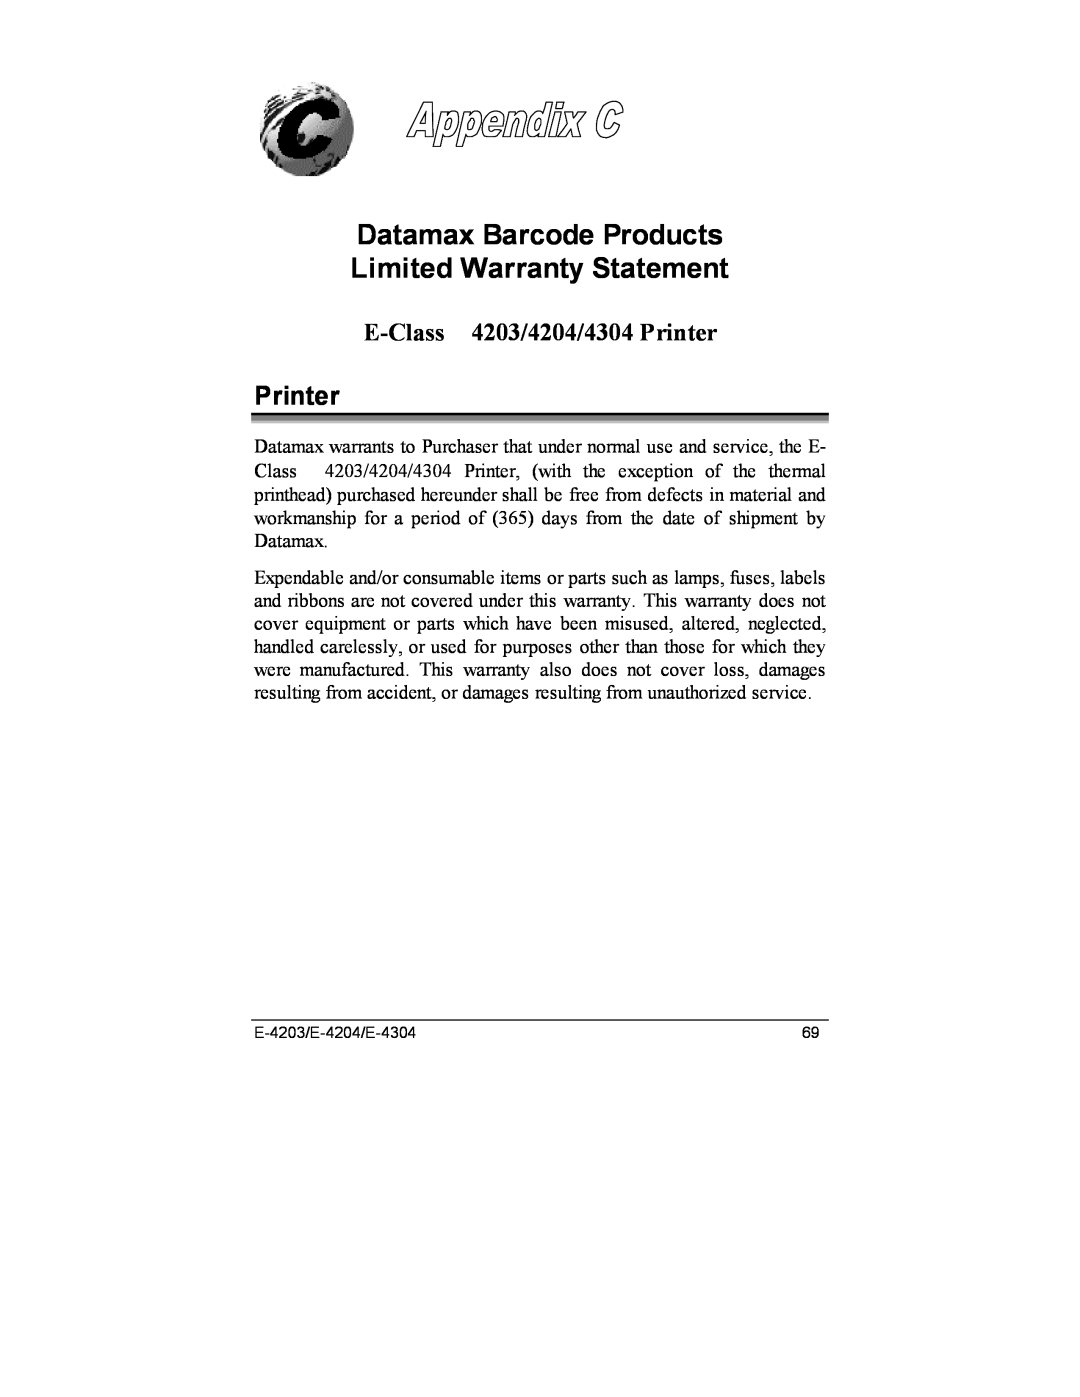 Datamax E-4204, E-4203, E-4304e Datamax Barcode Products Limited Warranty Statement, E-Class 4203/4204/4304 Printer 